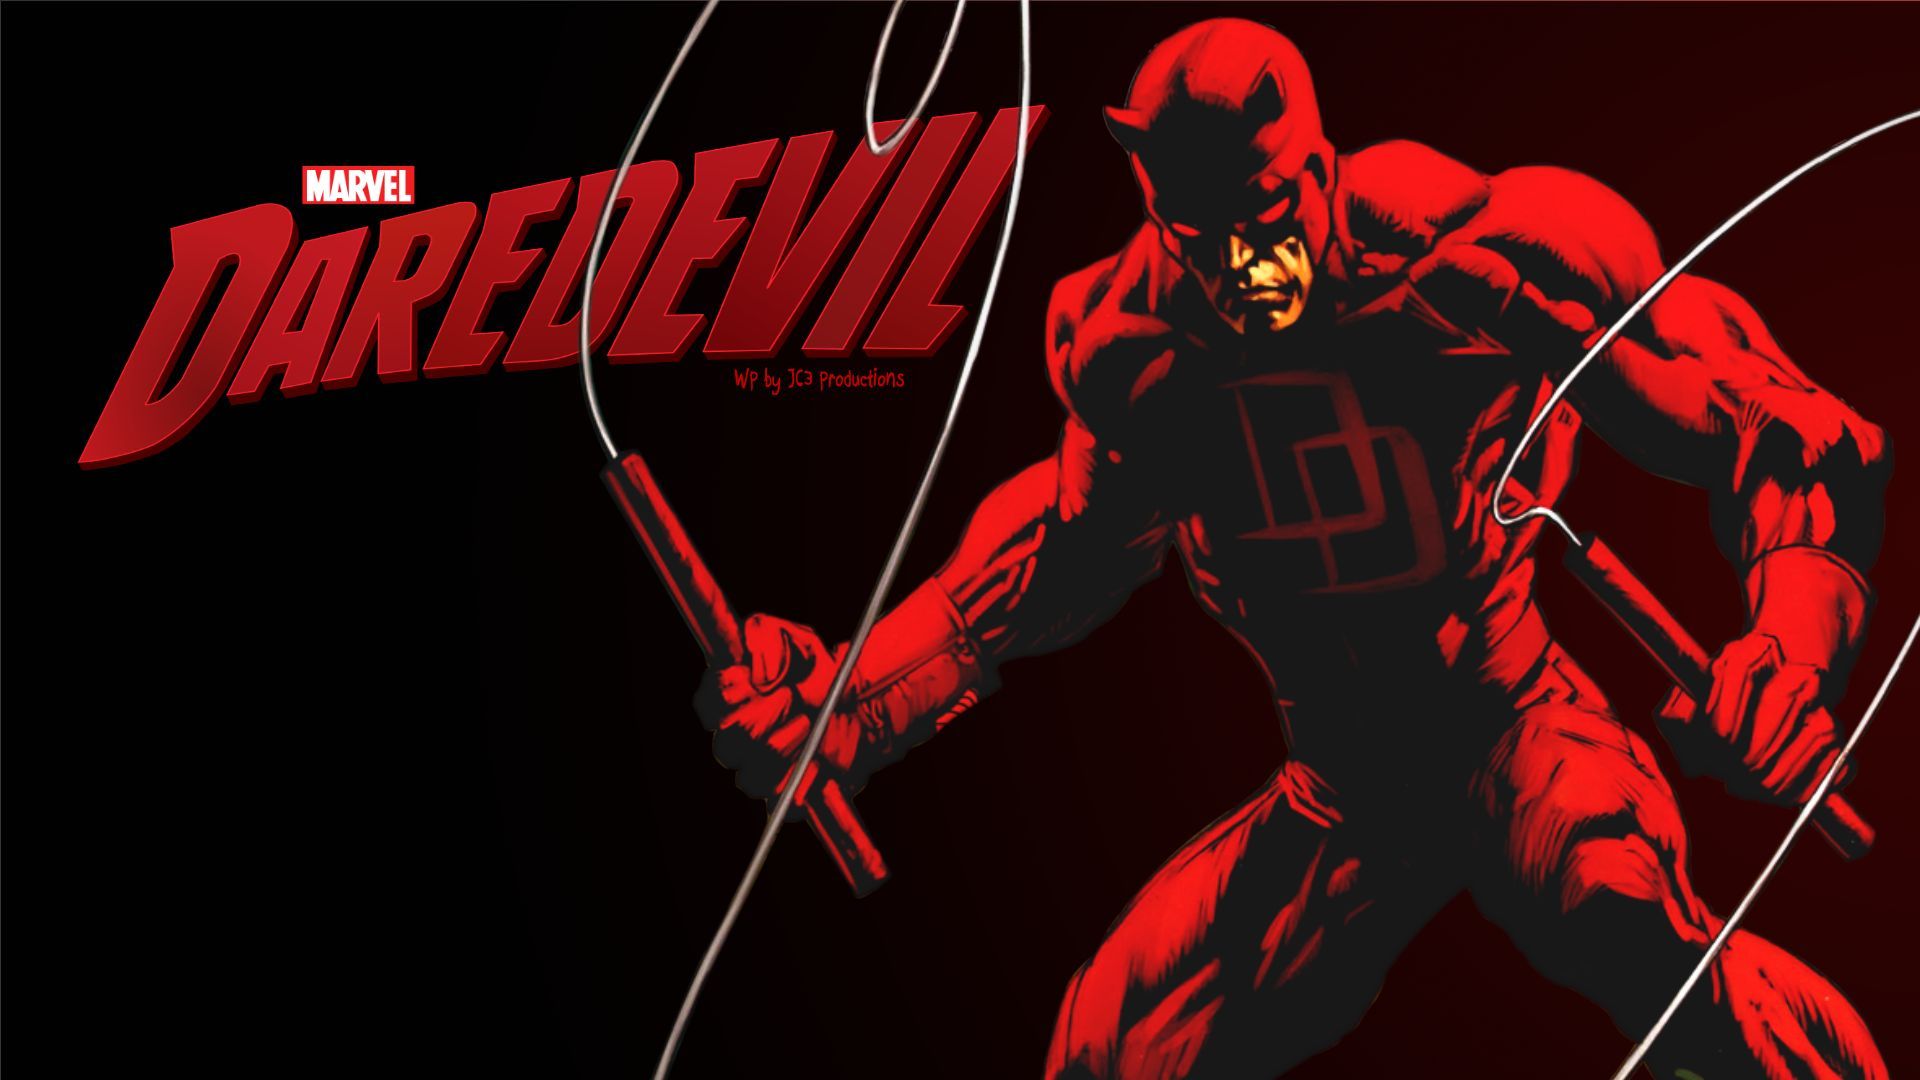 Marvel's Daredevil Wallpaper